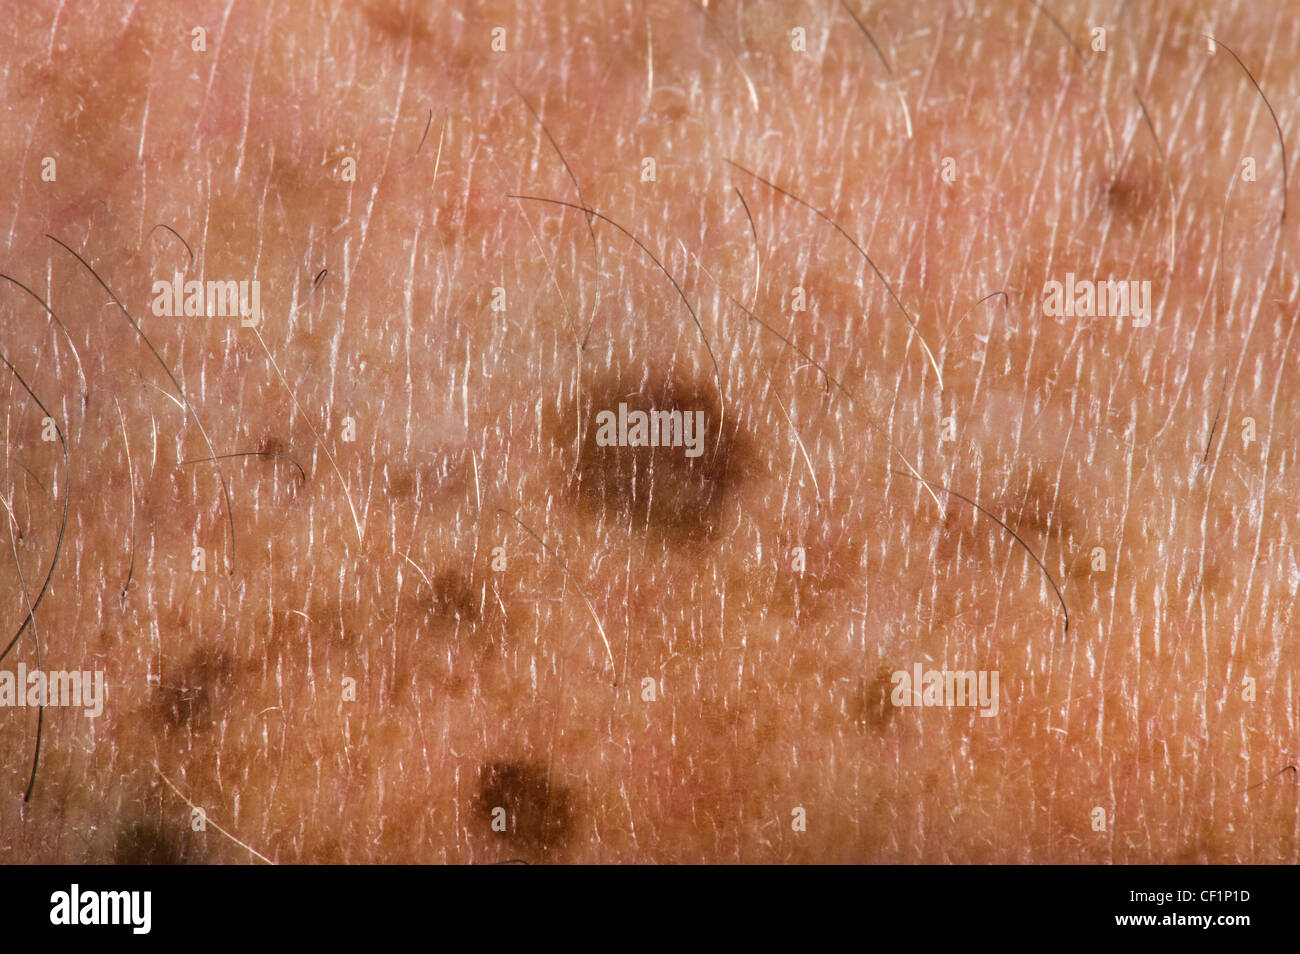 Altersflecken vor Ort Haut alte Problem Krebs entdeckt Nahaufnahme Closeup Makro Makro Dot braun kupferbraun alte Mann Gefahr gefährlich Stockfoto